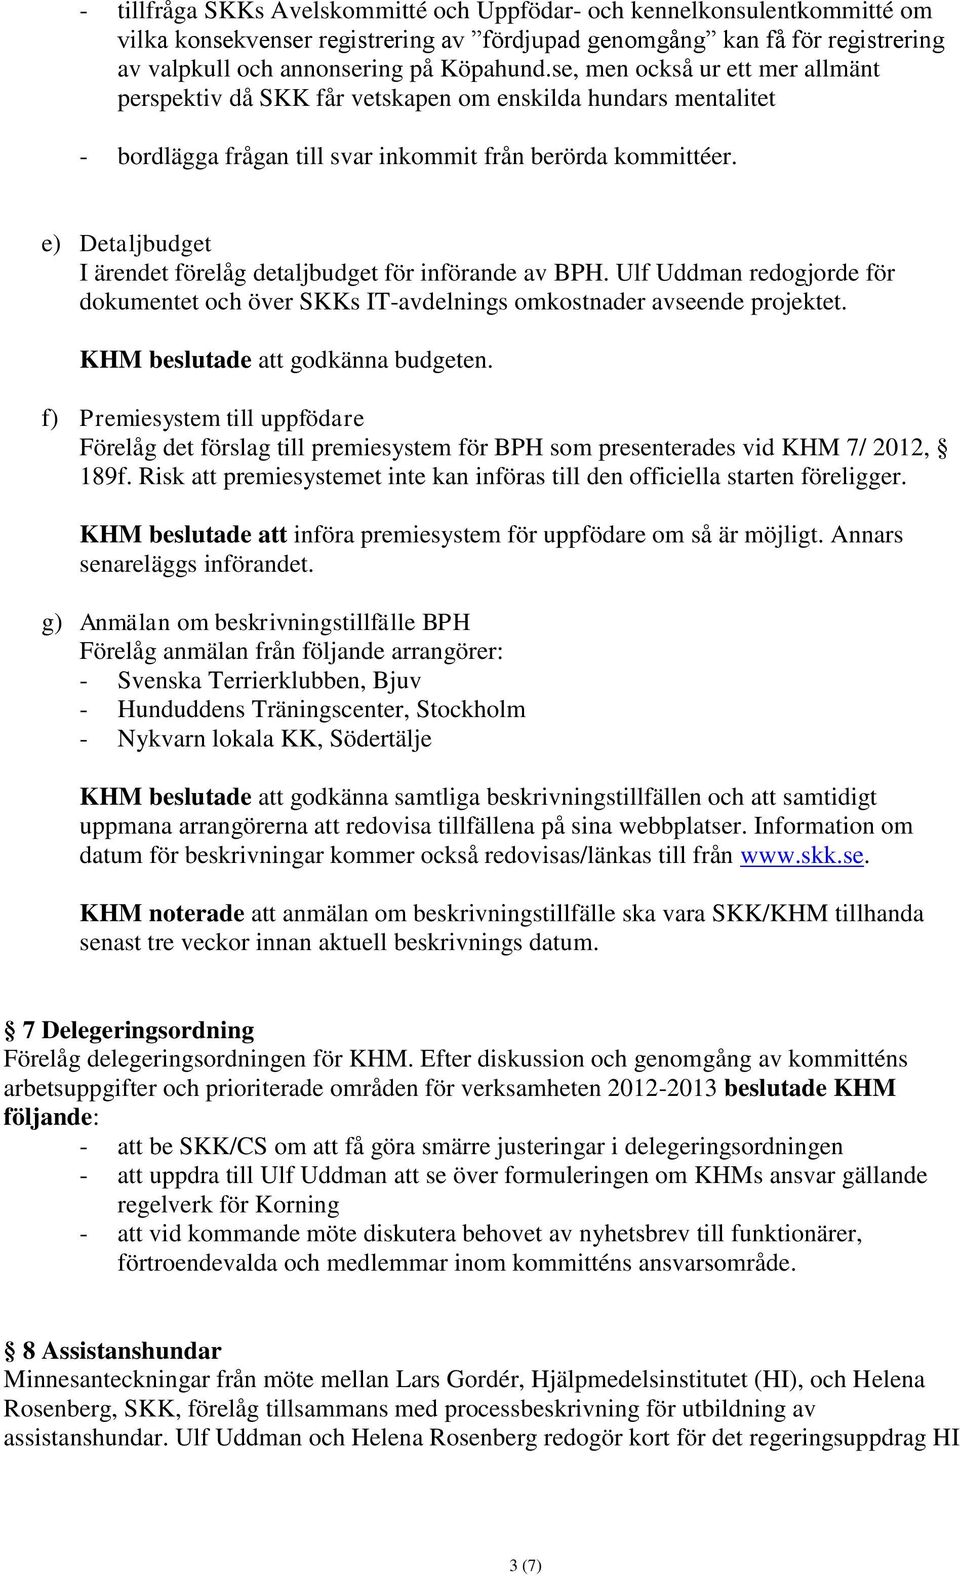 e) Detaljbudget I ärendet förelåg detaljbudget för införande av BPH. Ulf Uddman redogjorde för dokumentet och över SKKs IT-avdelnings omkostnader avseende projektet.